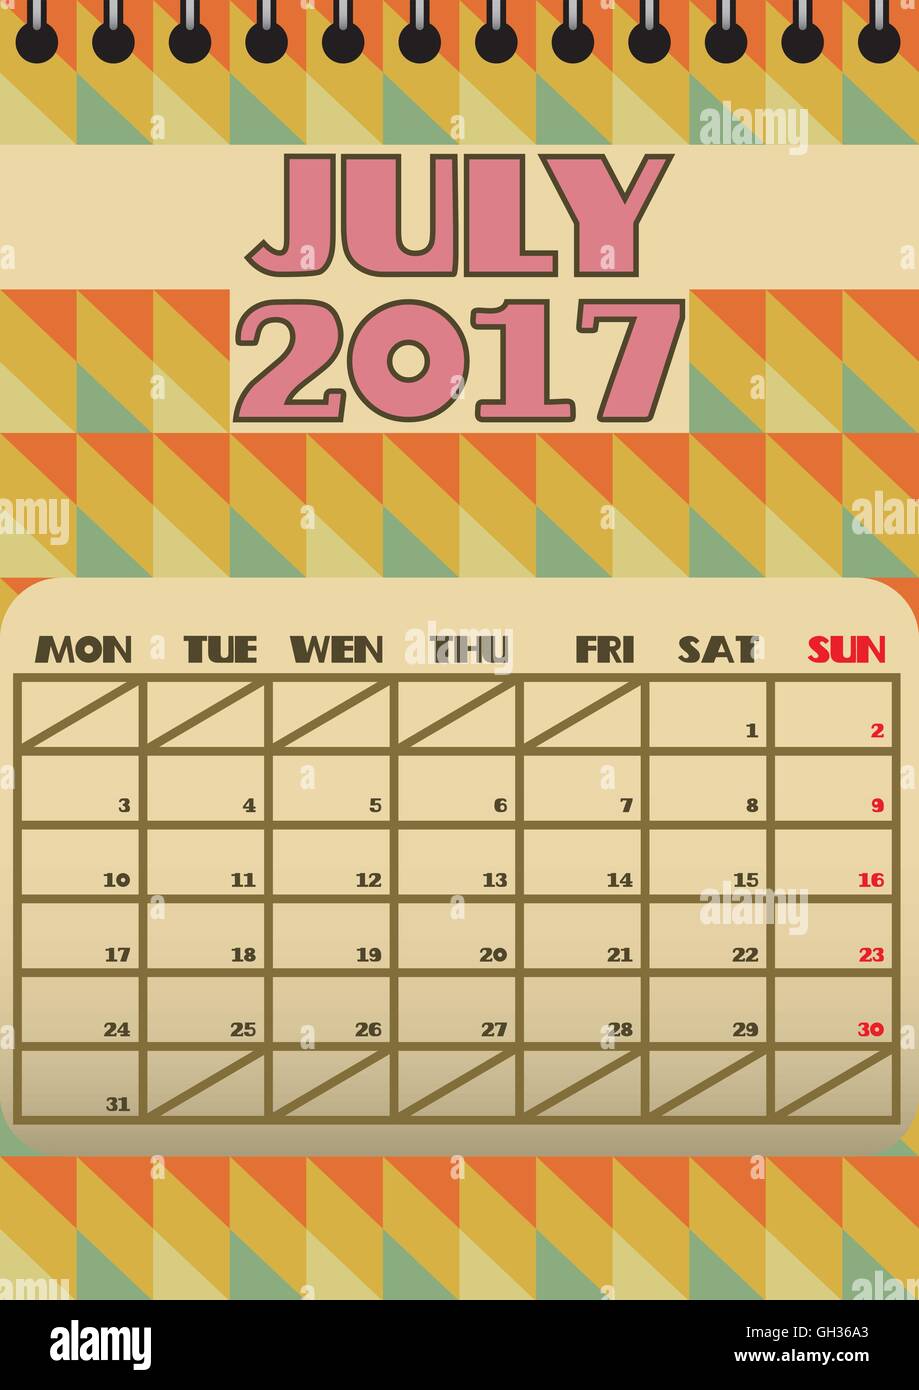 Juli 2017 Retro Kalender beginnt mit Montag. Vektor-Datei enthält isolierte Spiralbindung Ebene geometrische Formen Stock Vektor